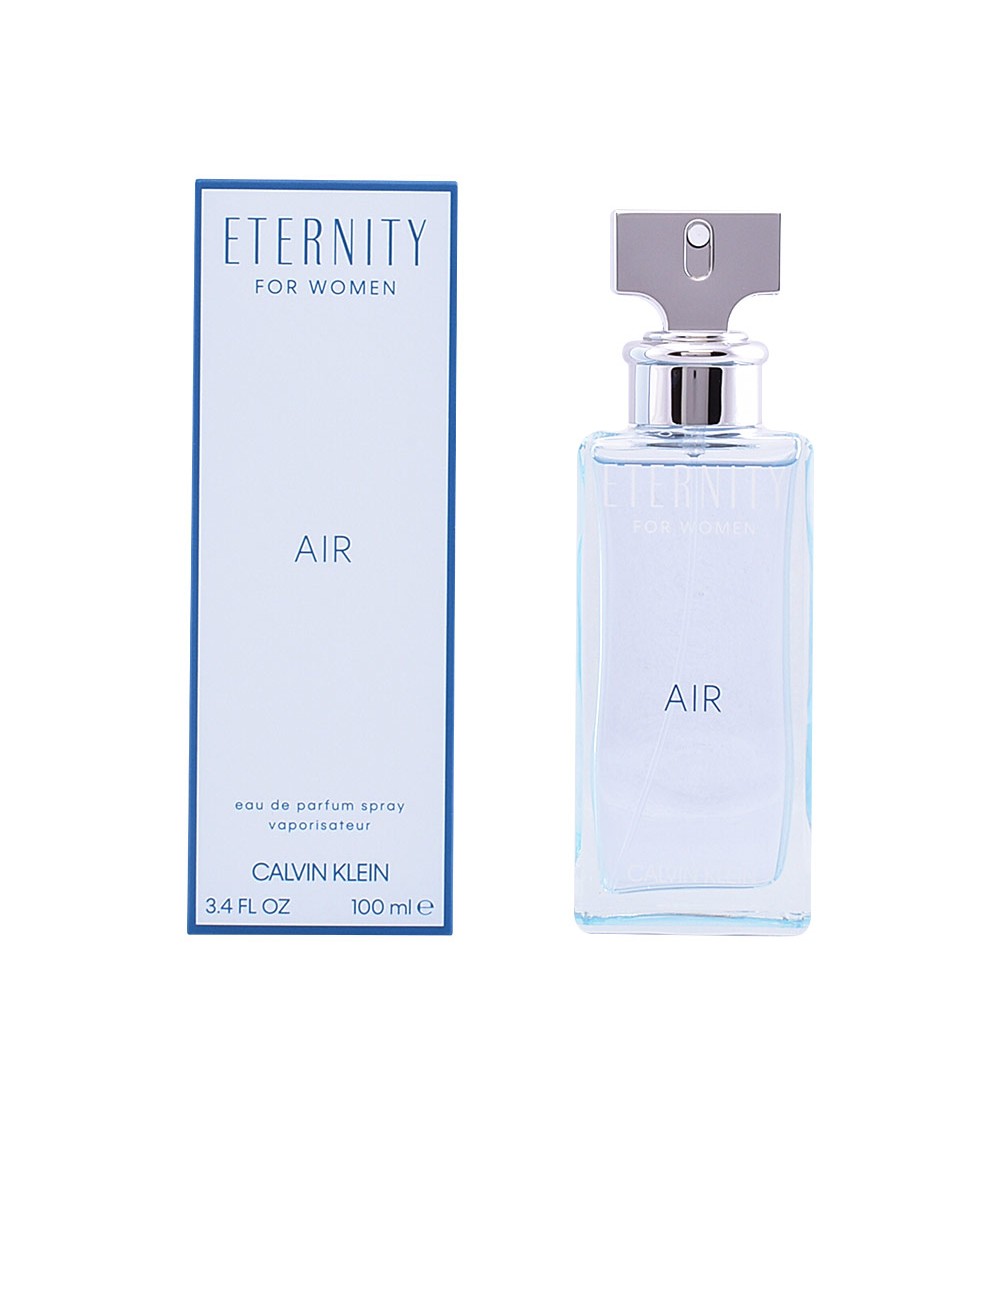 ETERNITY FOR WOMEN AIR eau de parfum vaporisateur